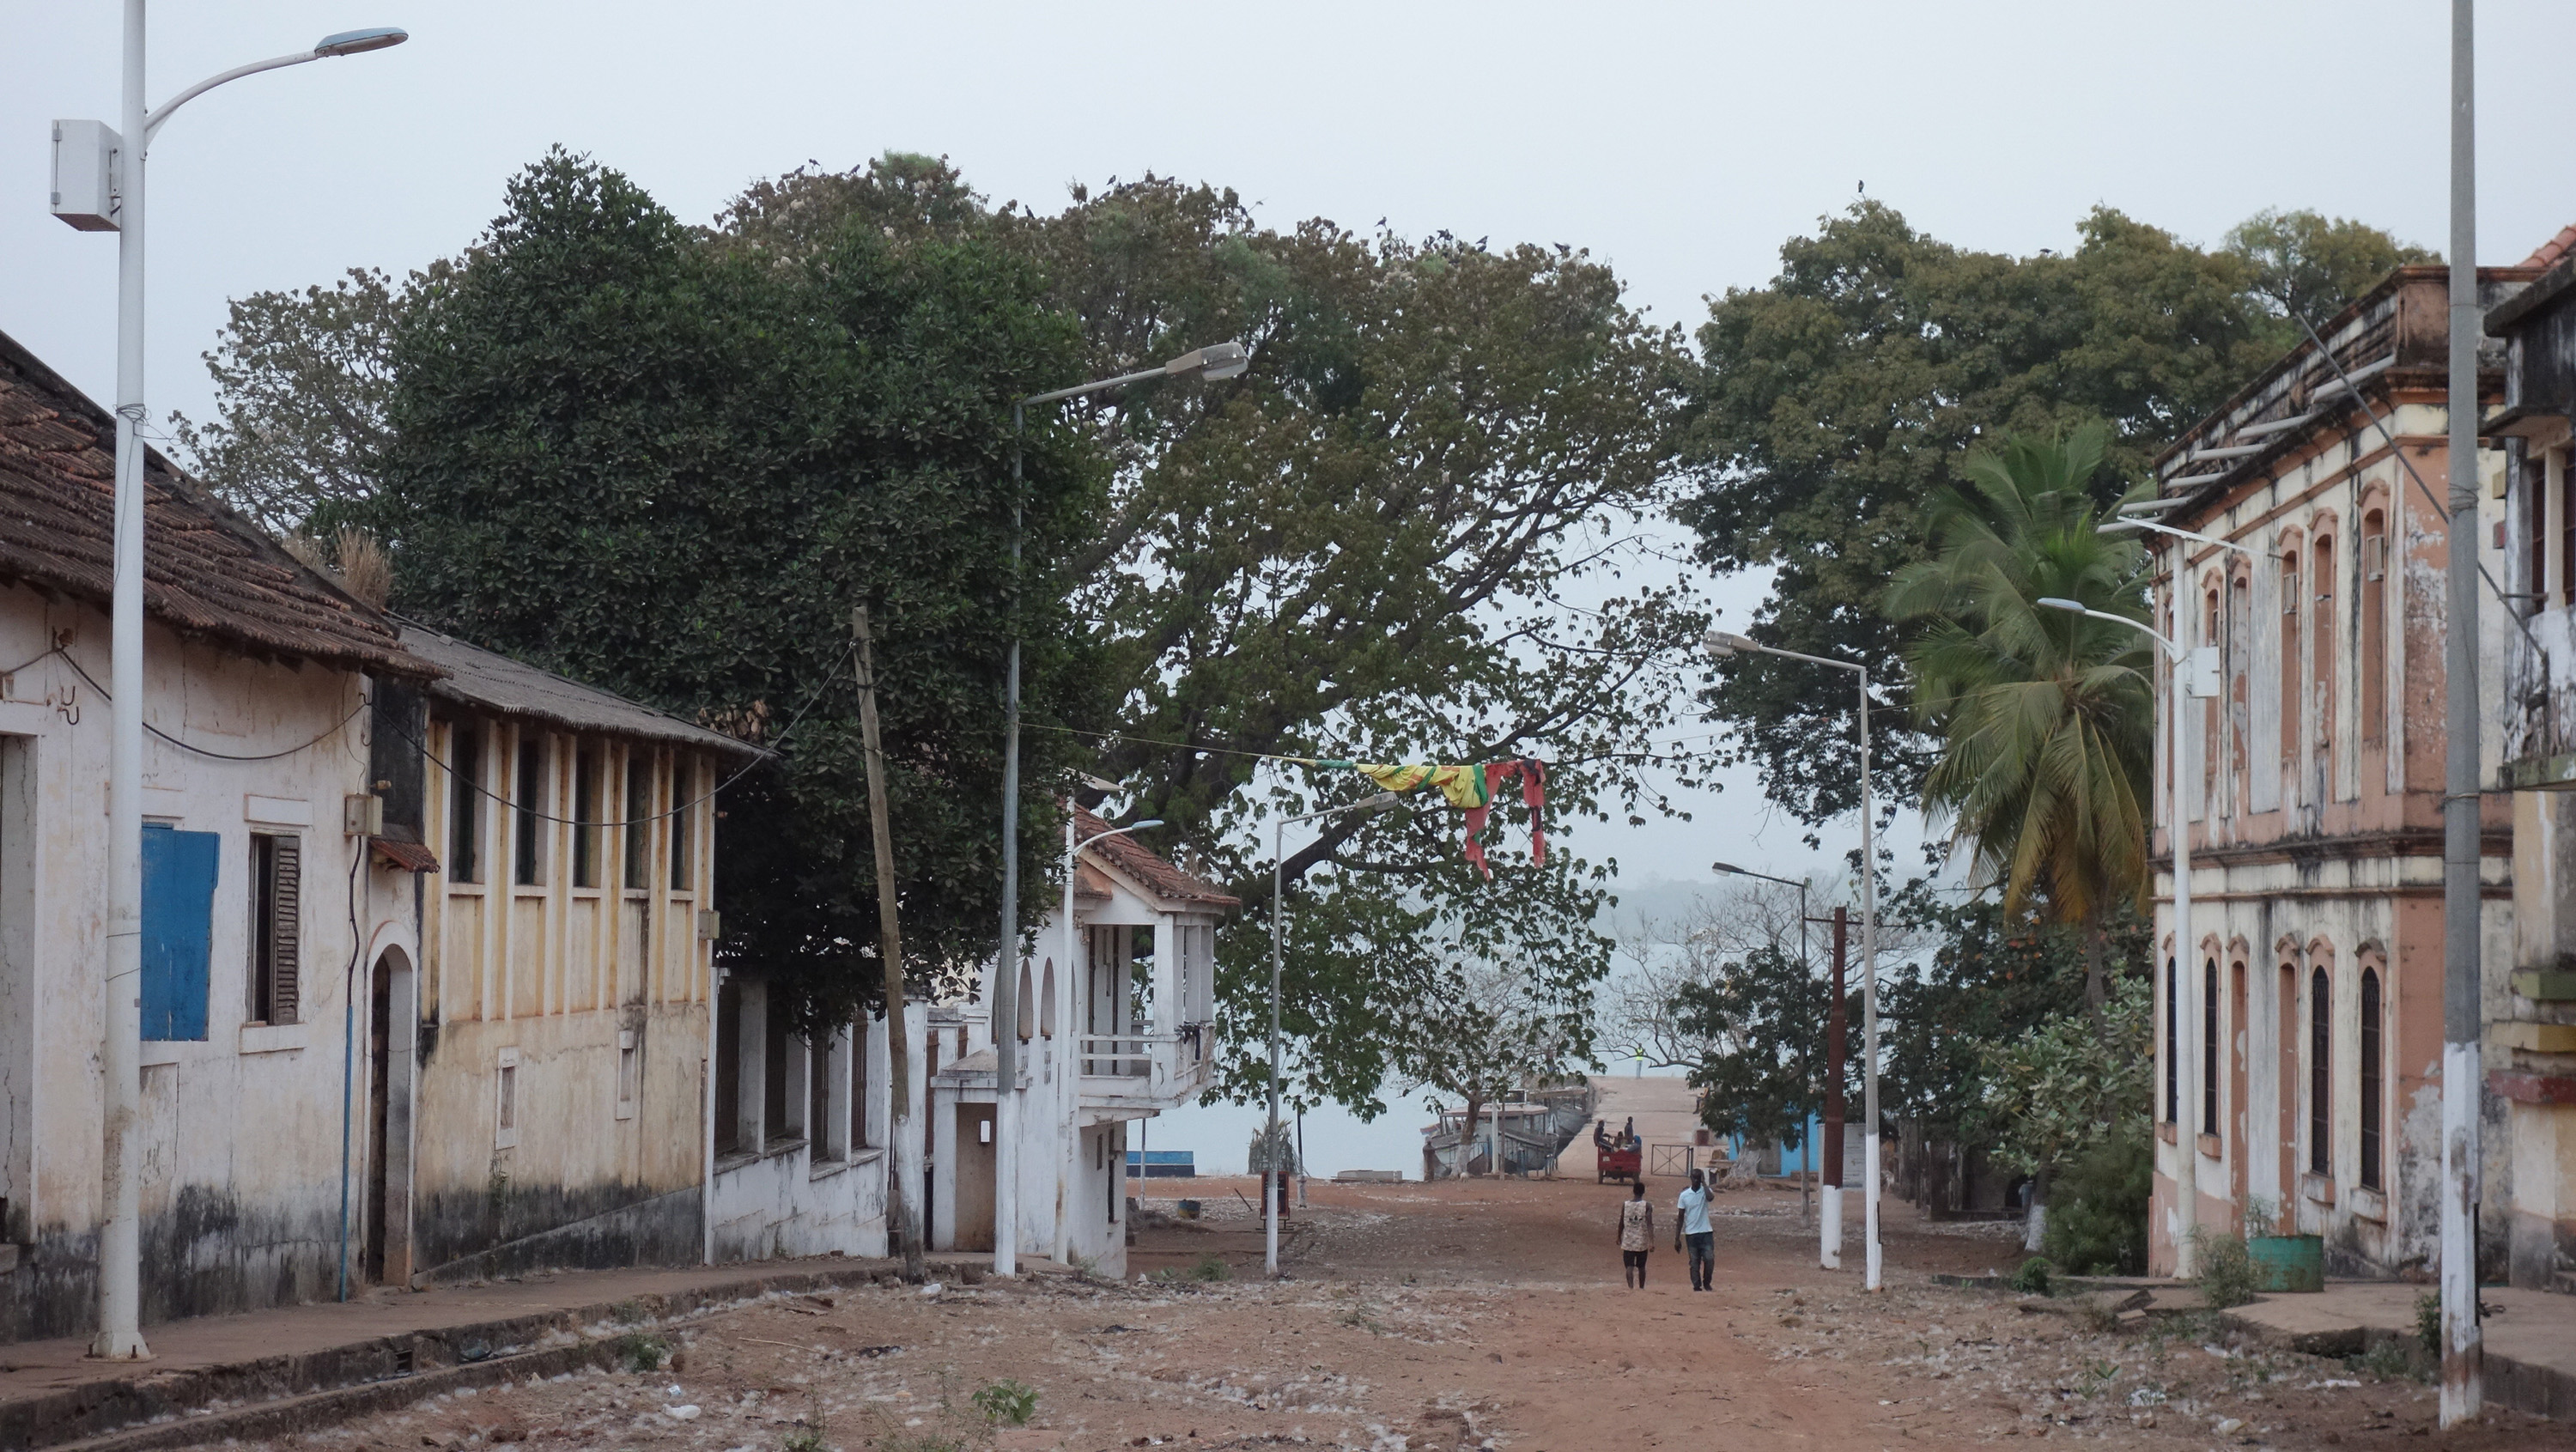 Bolama, Guinea Bissau, UN-Habitat